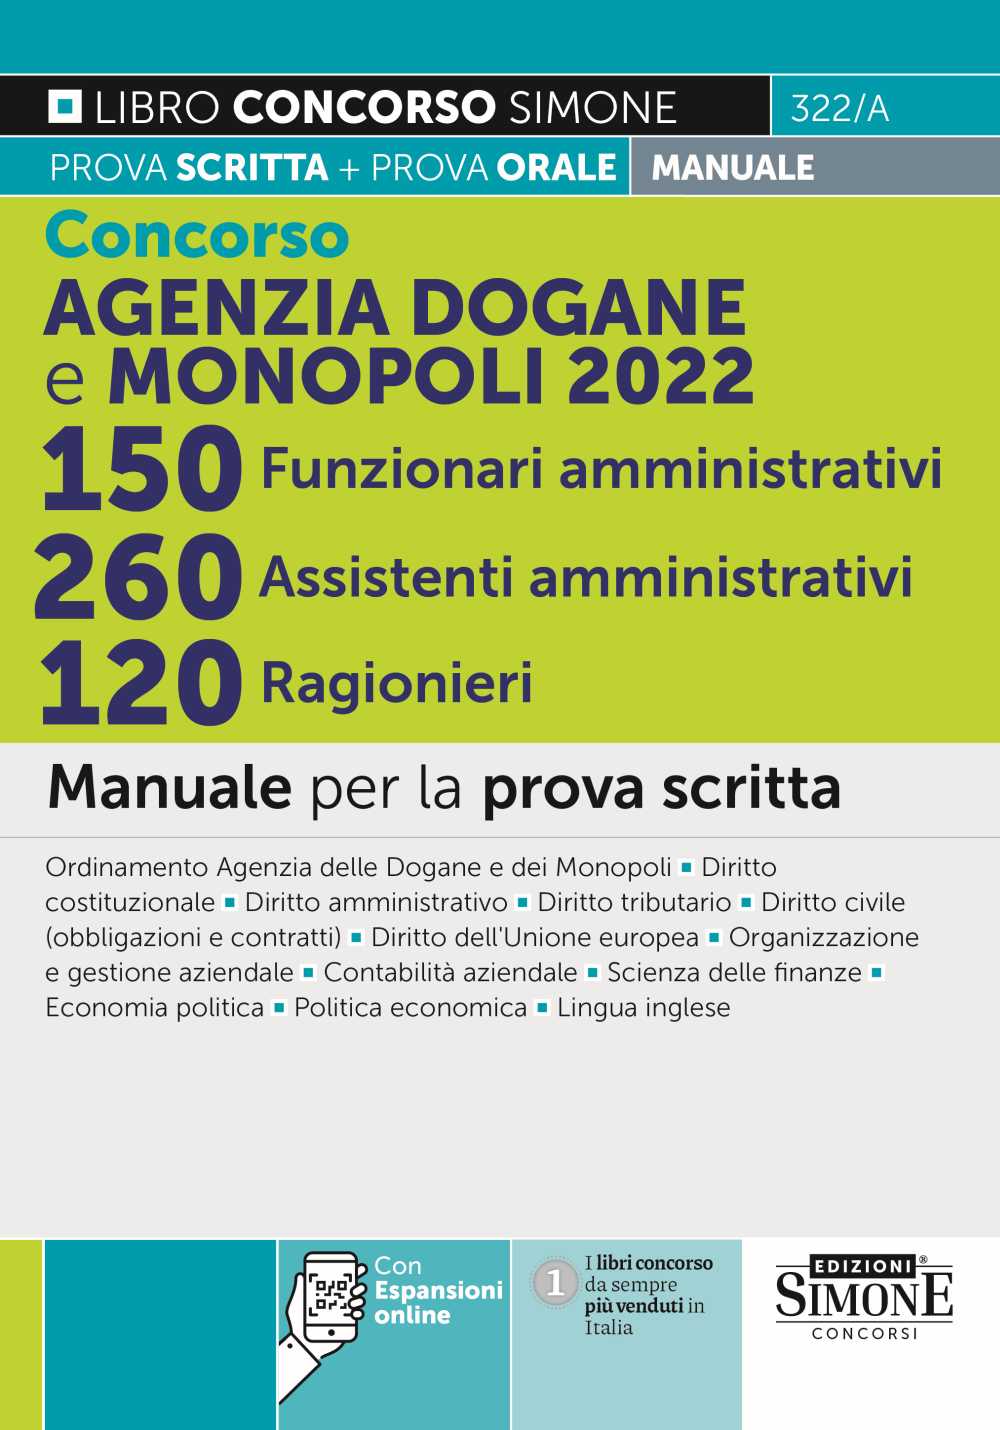 Concorso Agenzia Dogane - 150 Funzionari Amministrativi - 260 Assistenti Amministrativi - 120 Ragionieri - Manuale per la prova scritta - 322/A